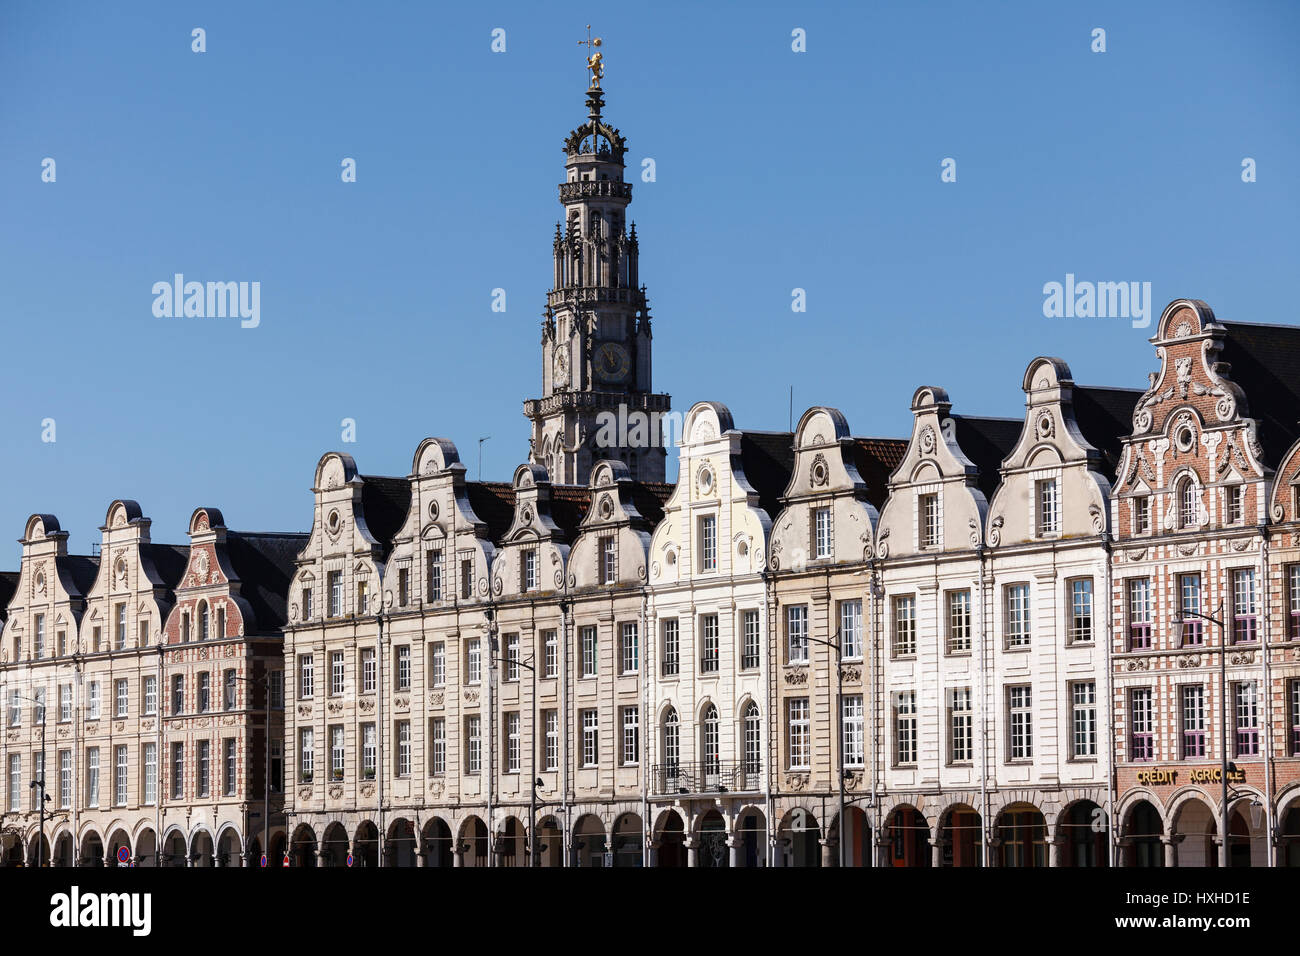 Flemish baroque style facades in the Grand Place, Arras, Pas-de-Calais, France Stock Photo